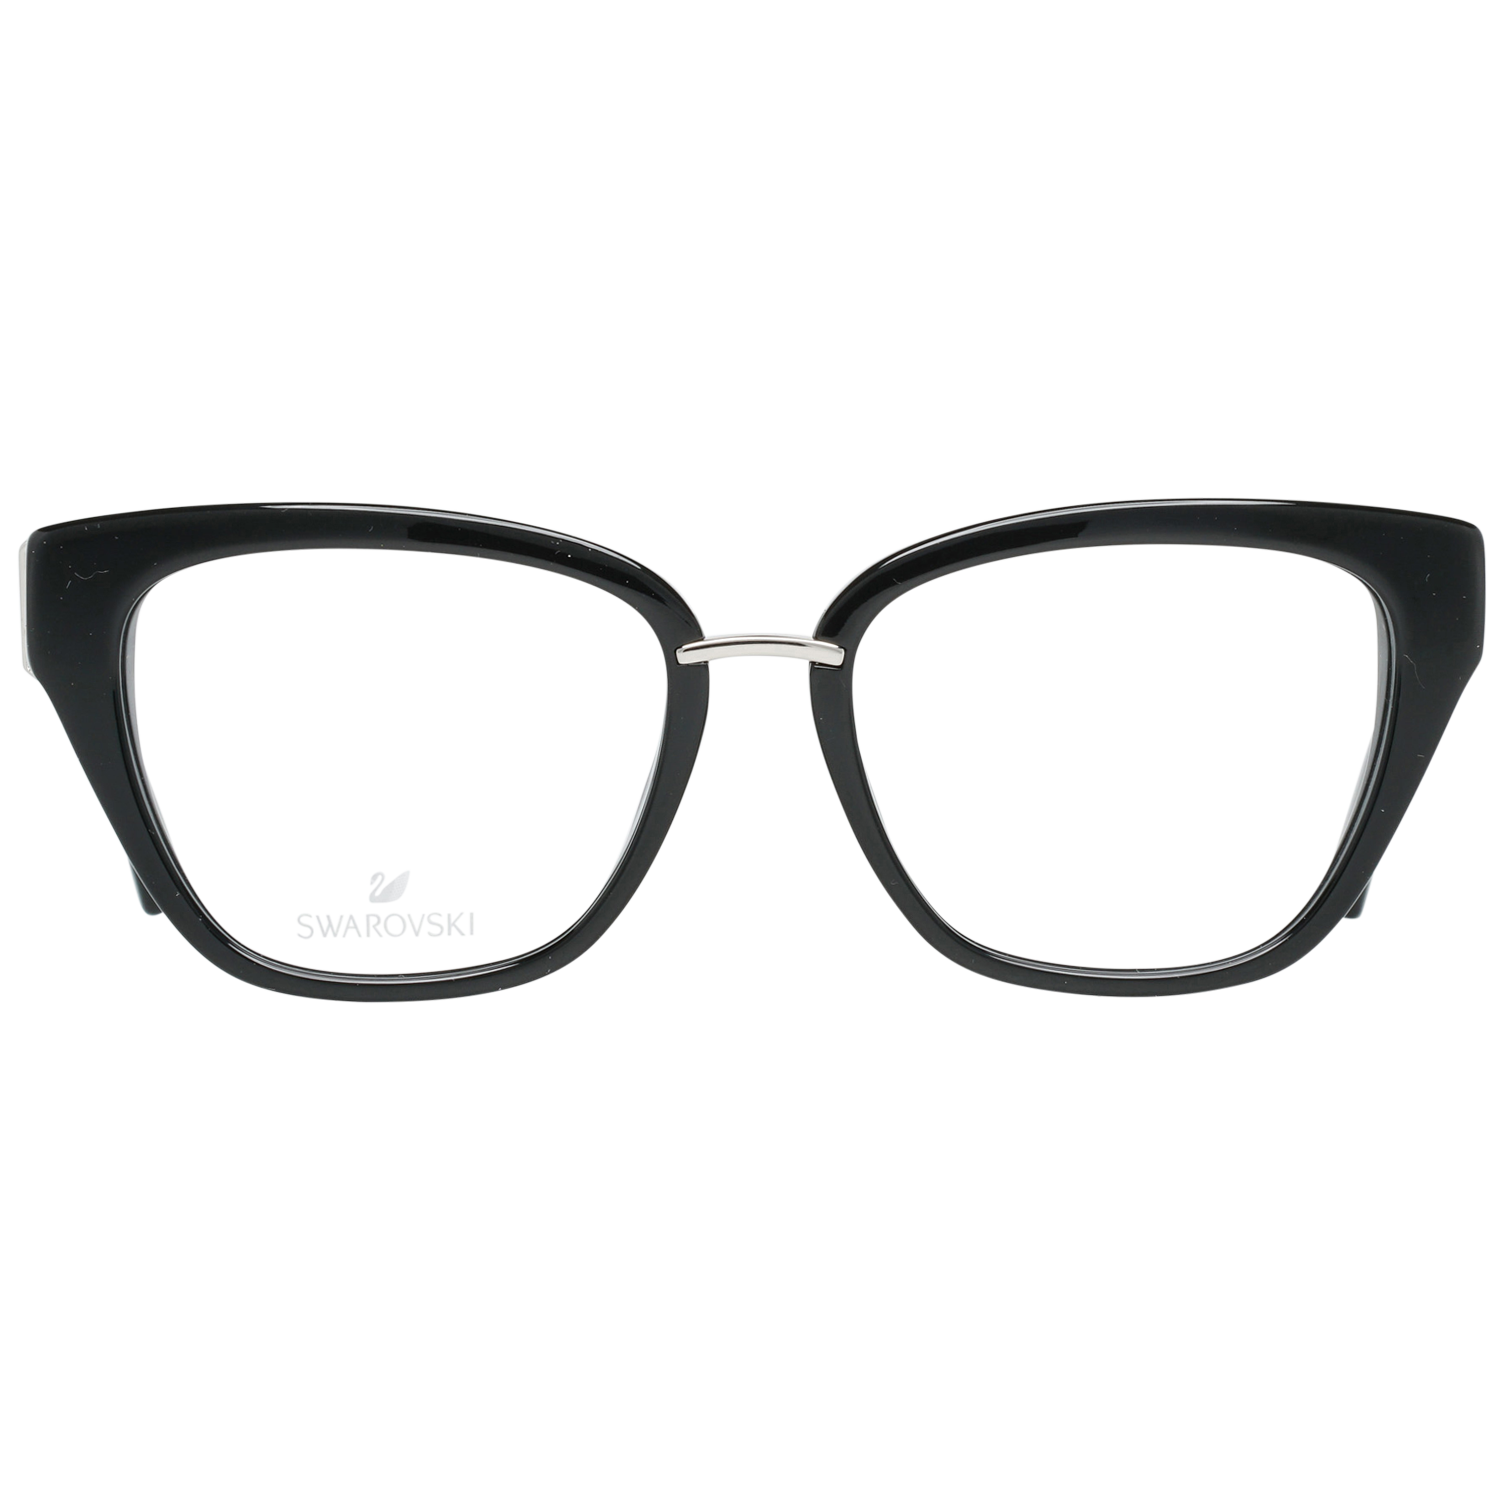 Swarovski Frames Swarovski Women Glasses Optical Frame SK5251 001 52 Eyeglasses Eyewear UK USA Australia 